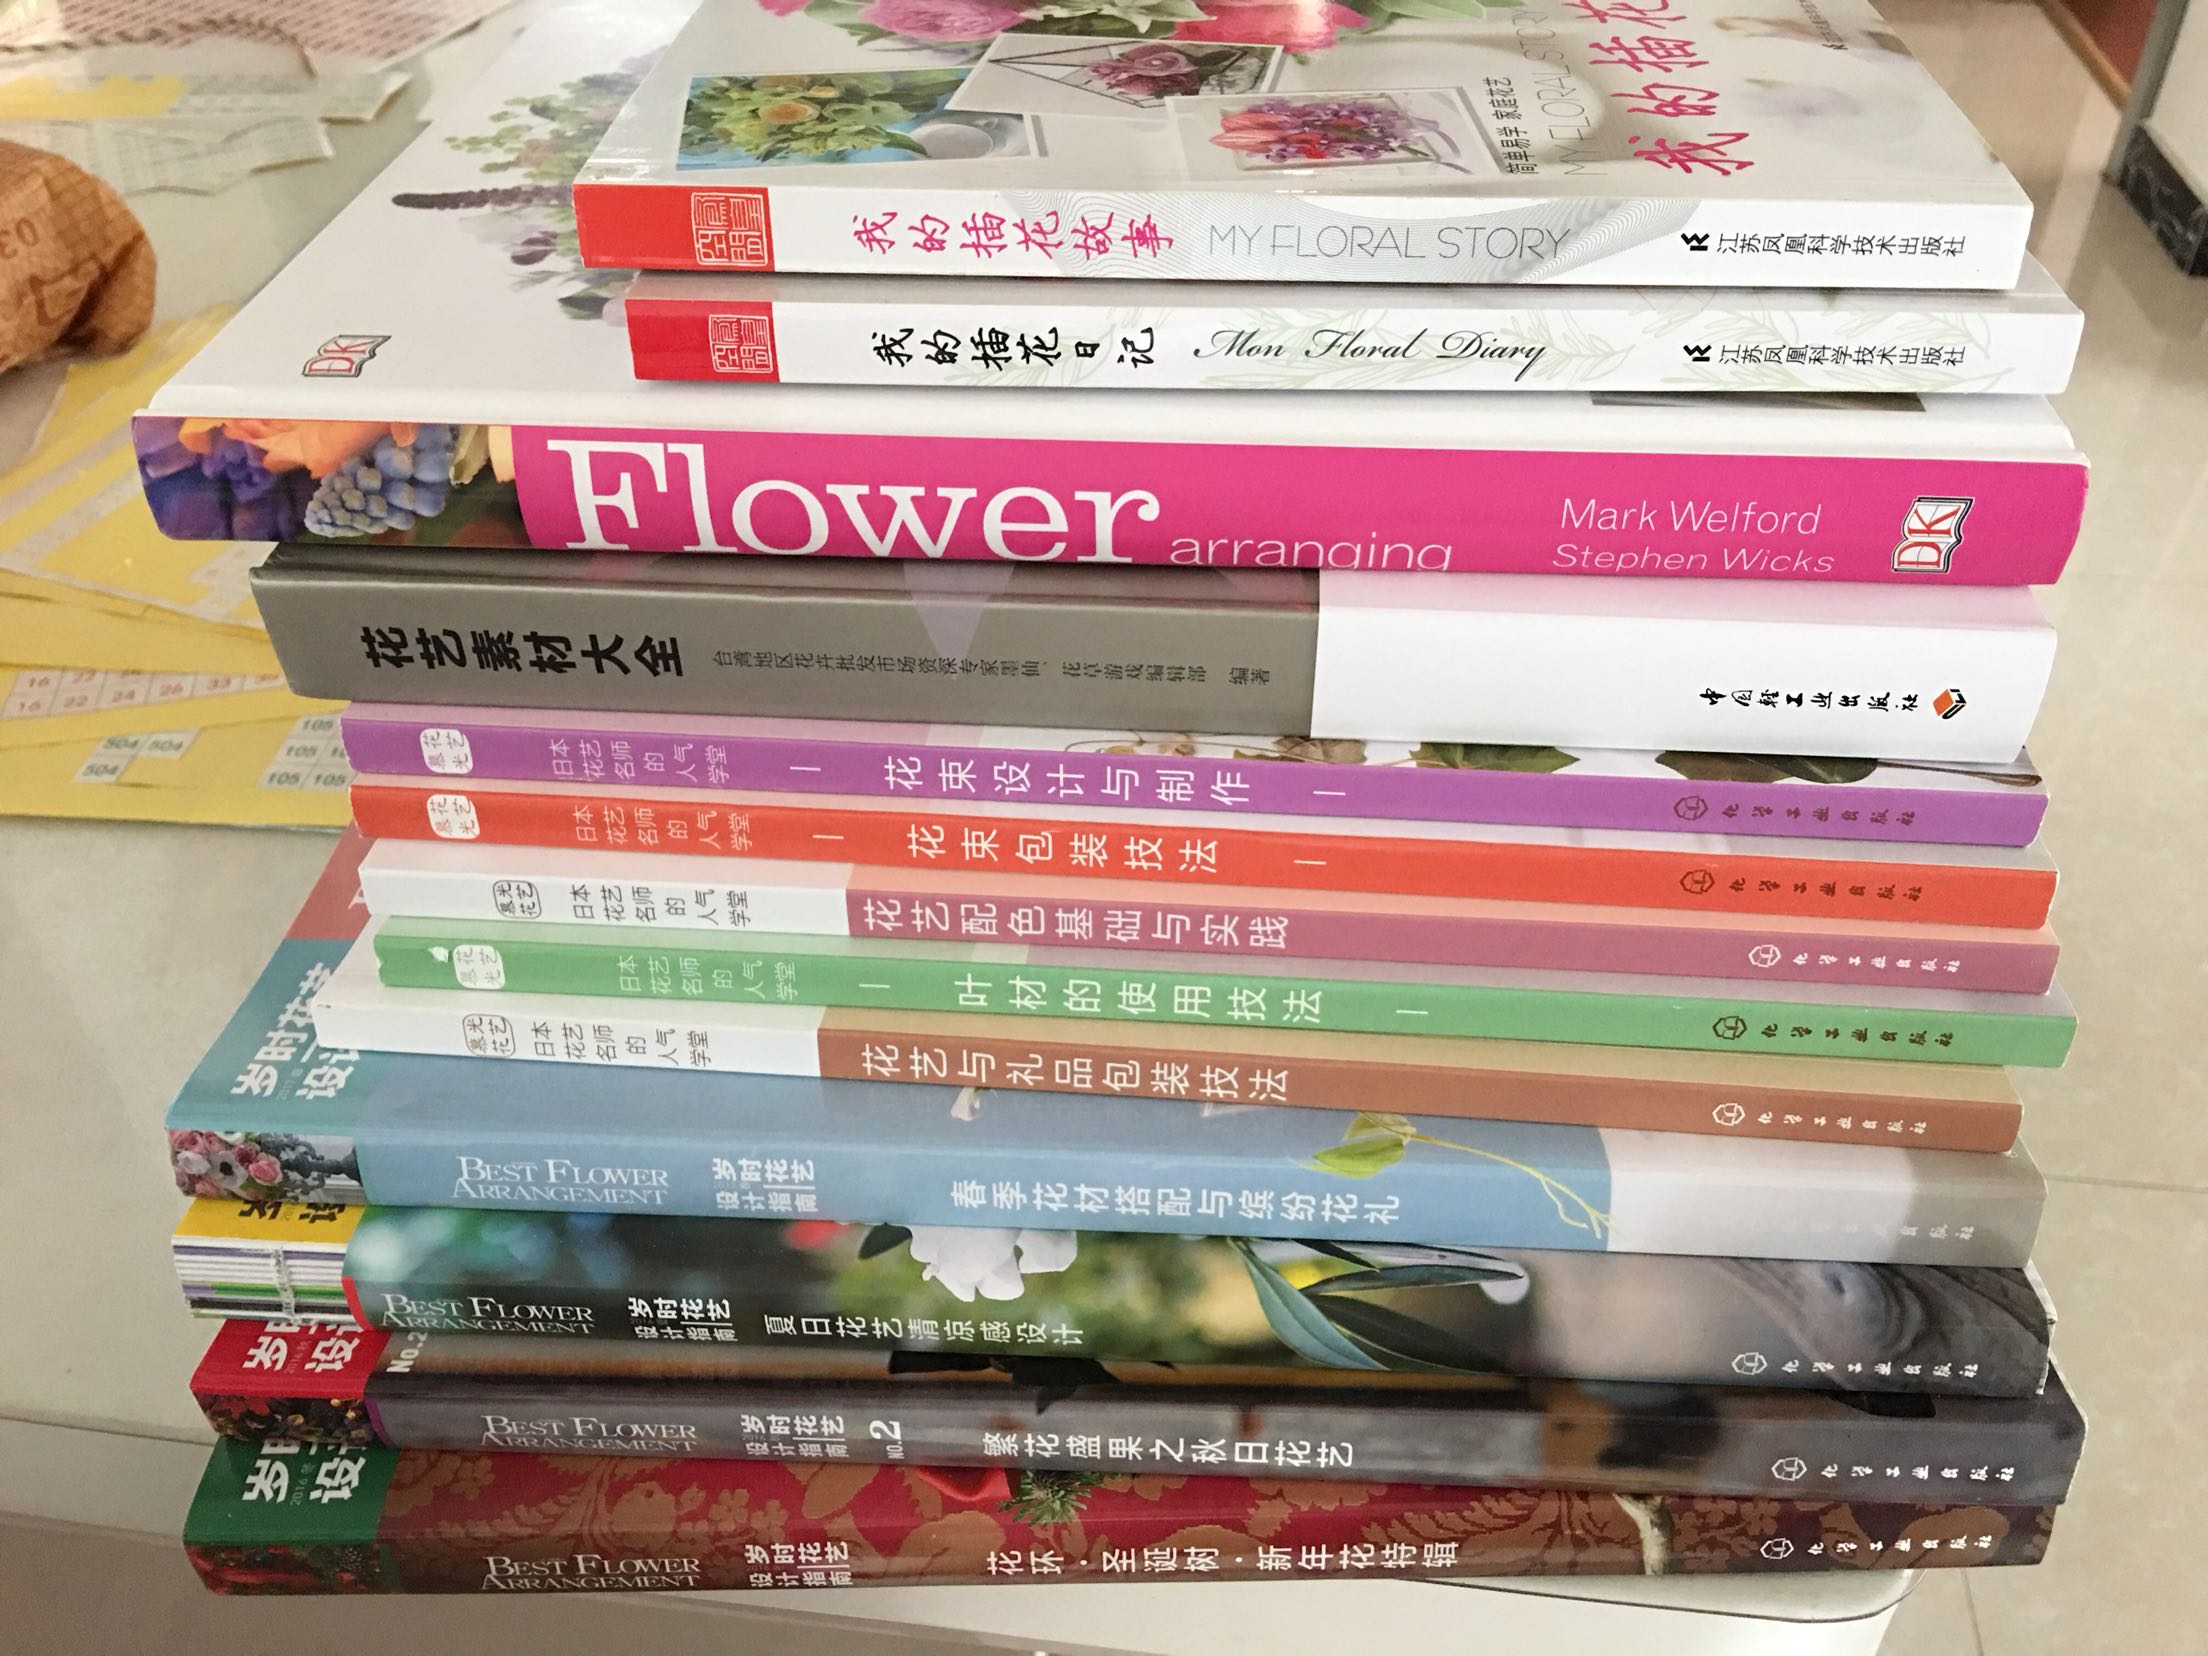 凑活动买了很多花艺书，学习起来！！